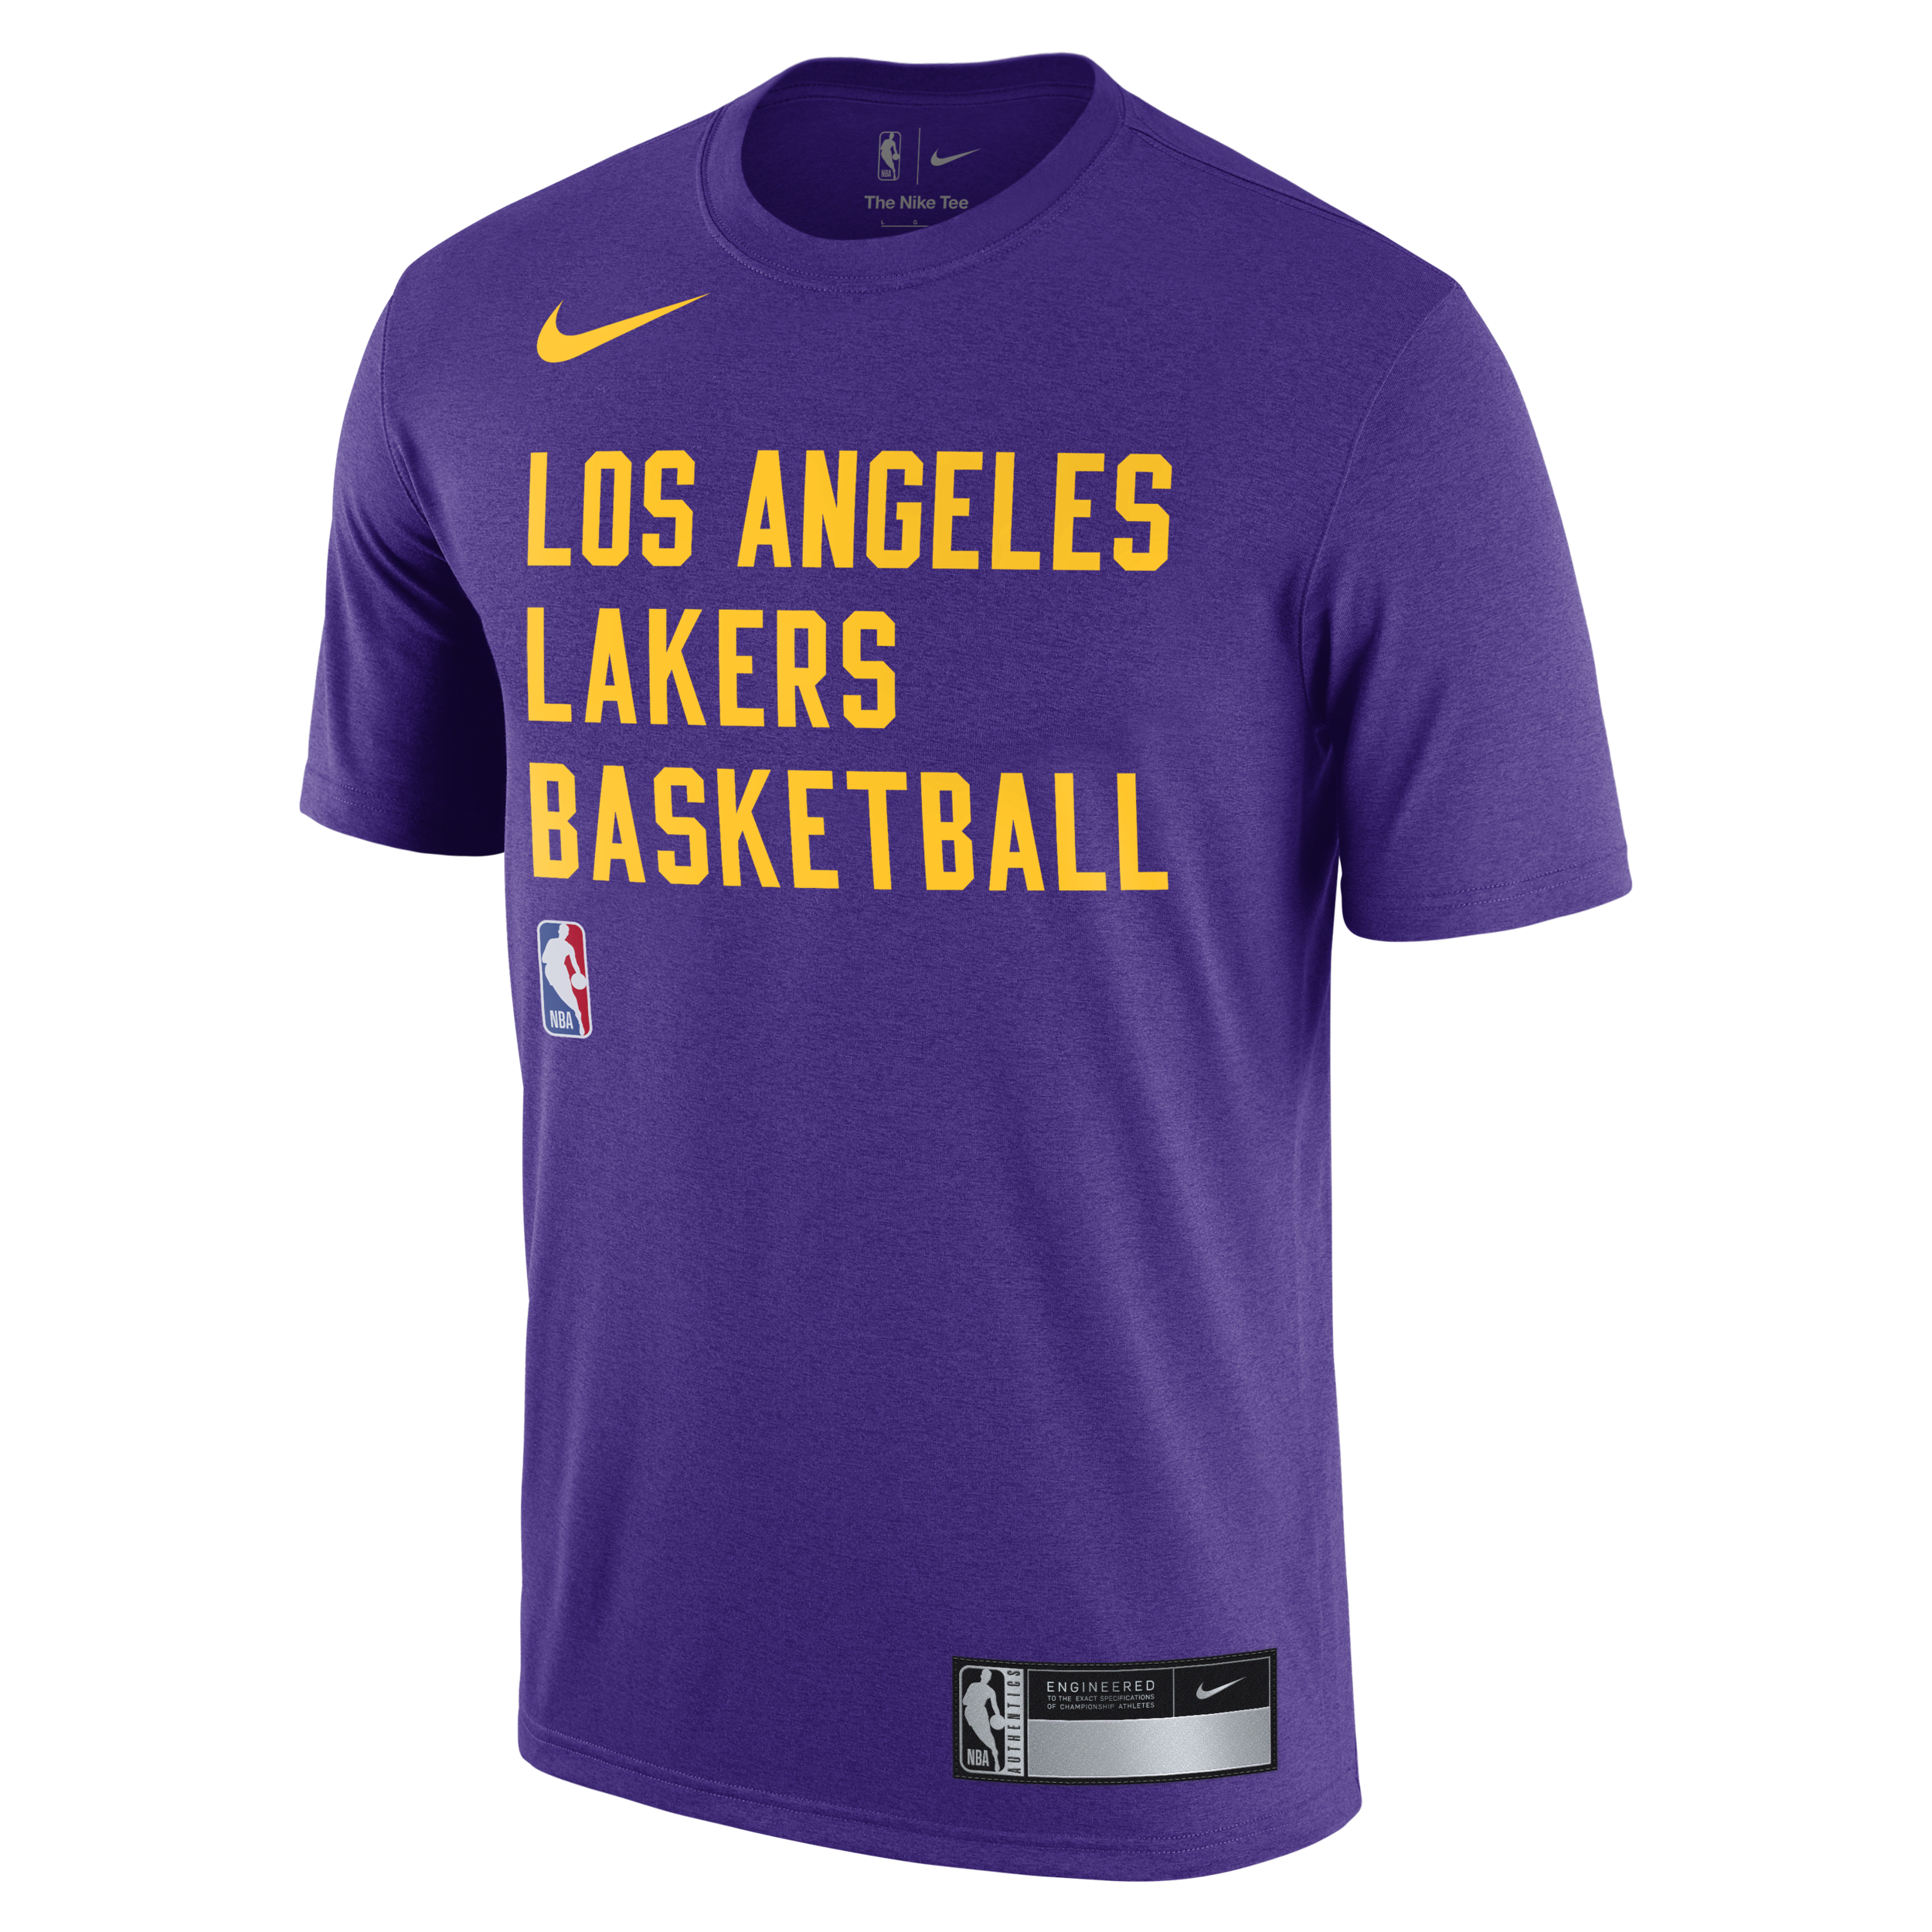 Los Angeles Lakers Nike NBA-trainingsshirt met Dri-FIT voor heren - Paars